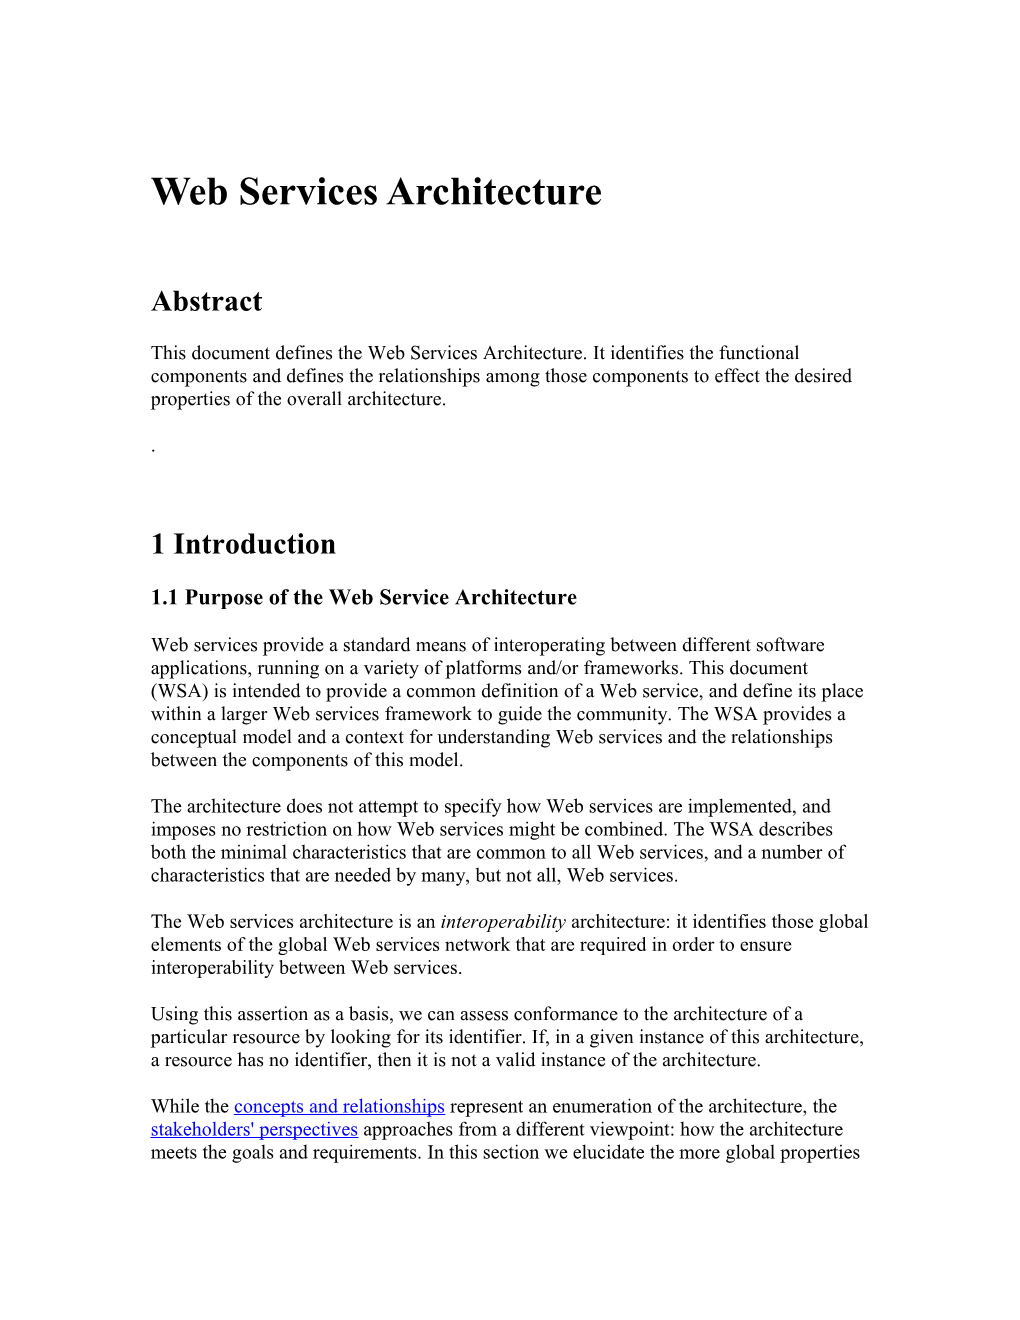 1.1 Purpose of the Web Service Architecture